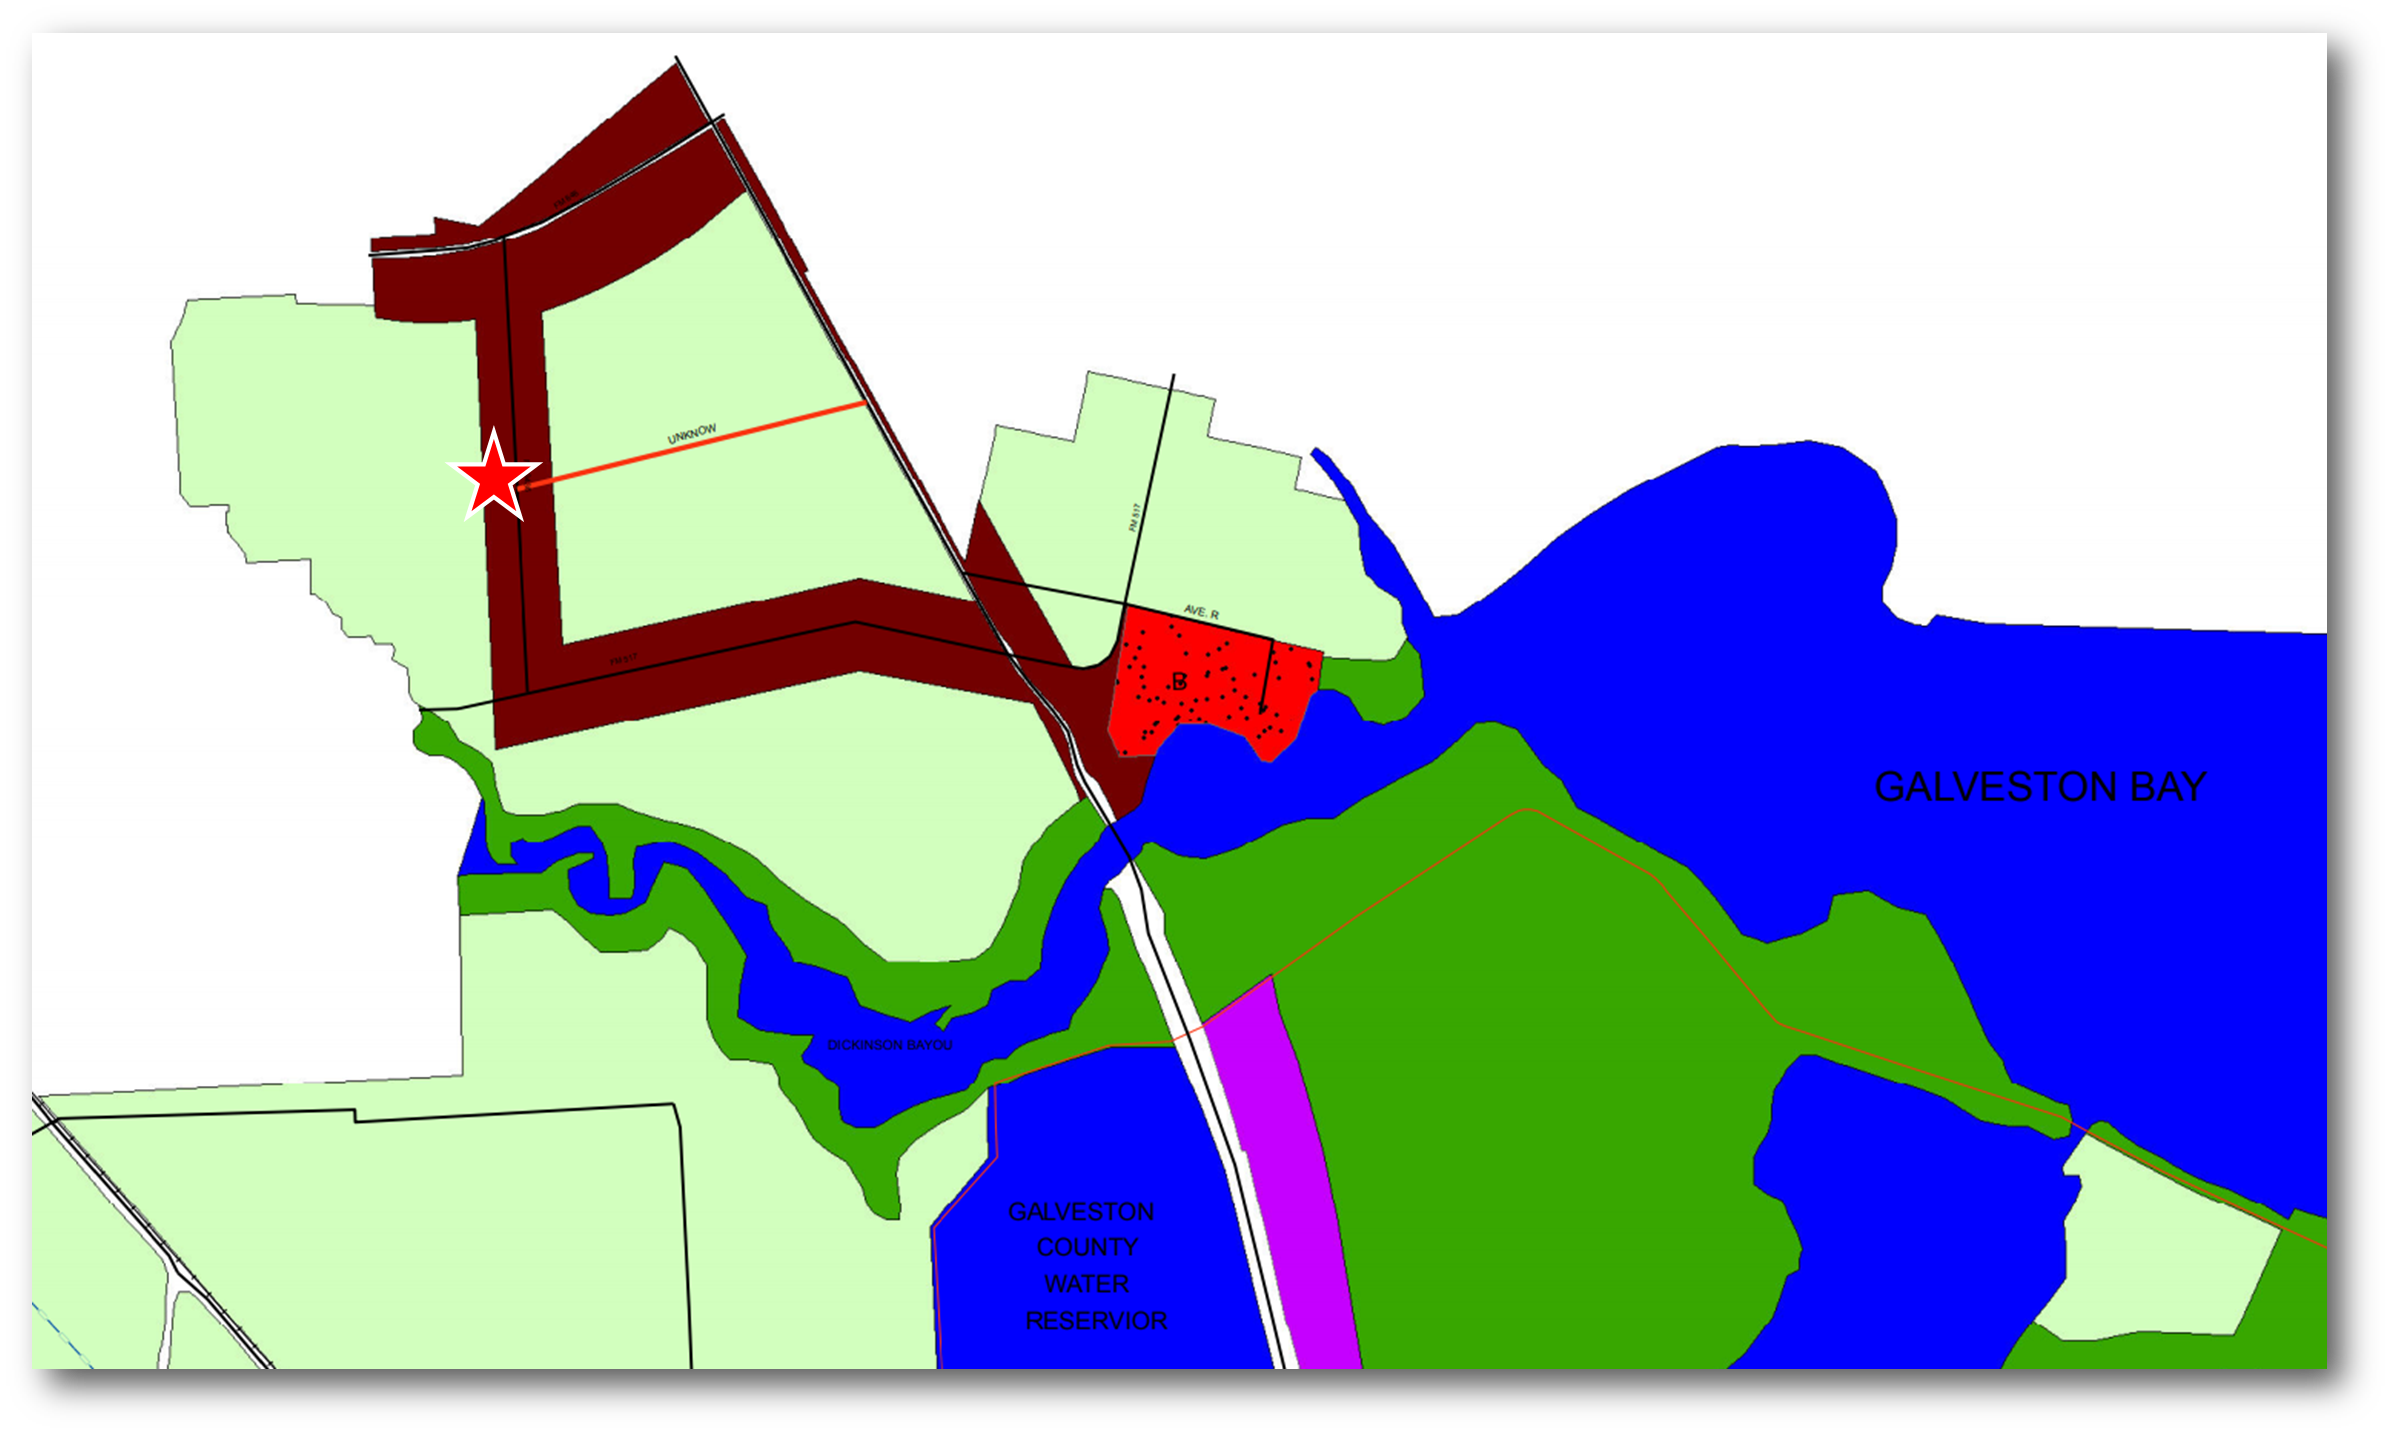 Land Use showing property